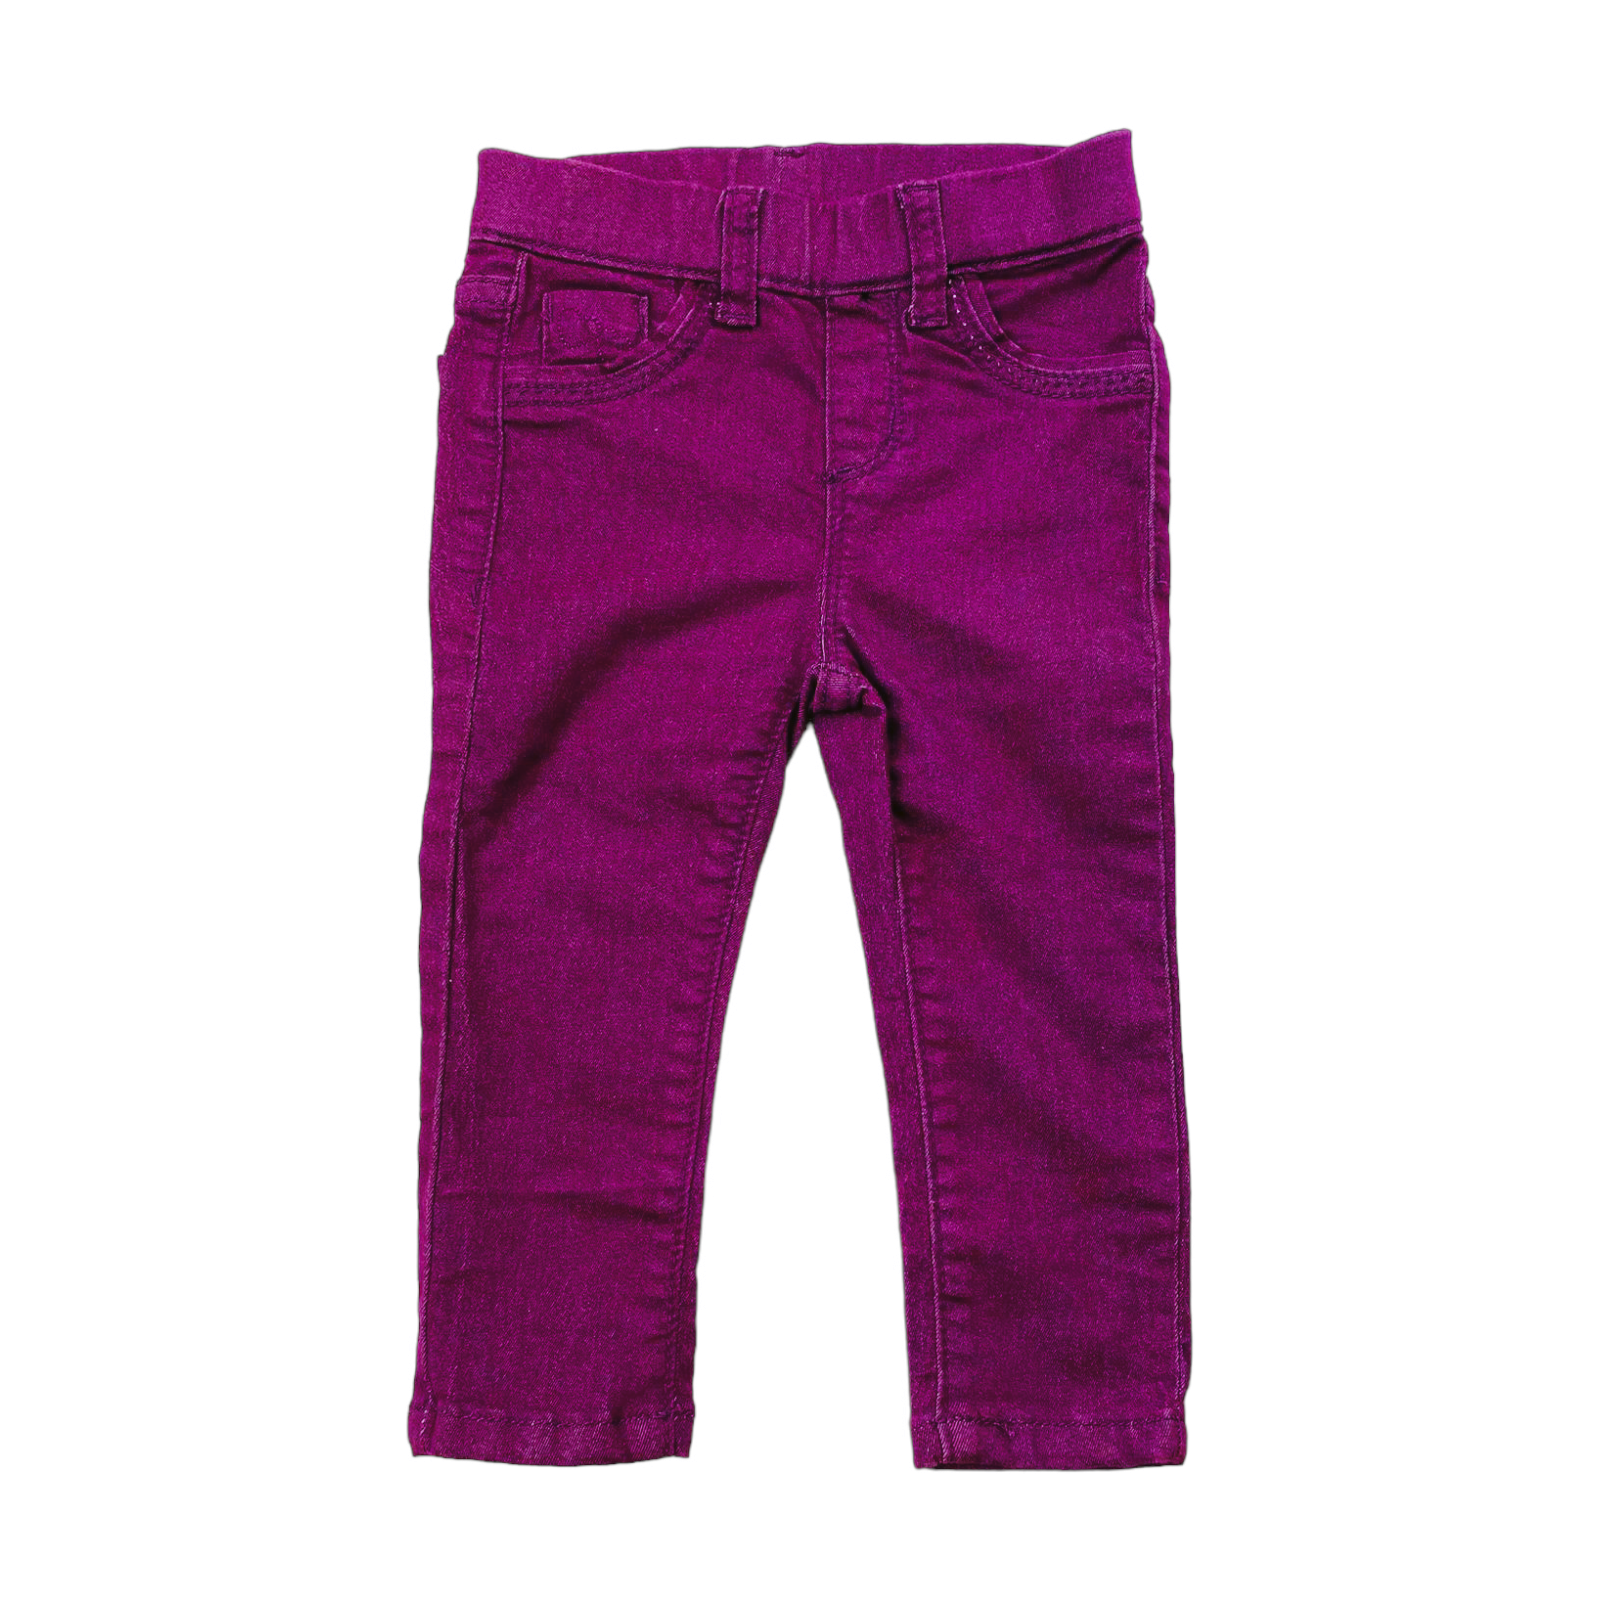 Pantalon de mezclilla lila